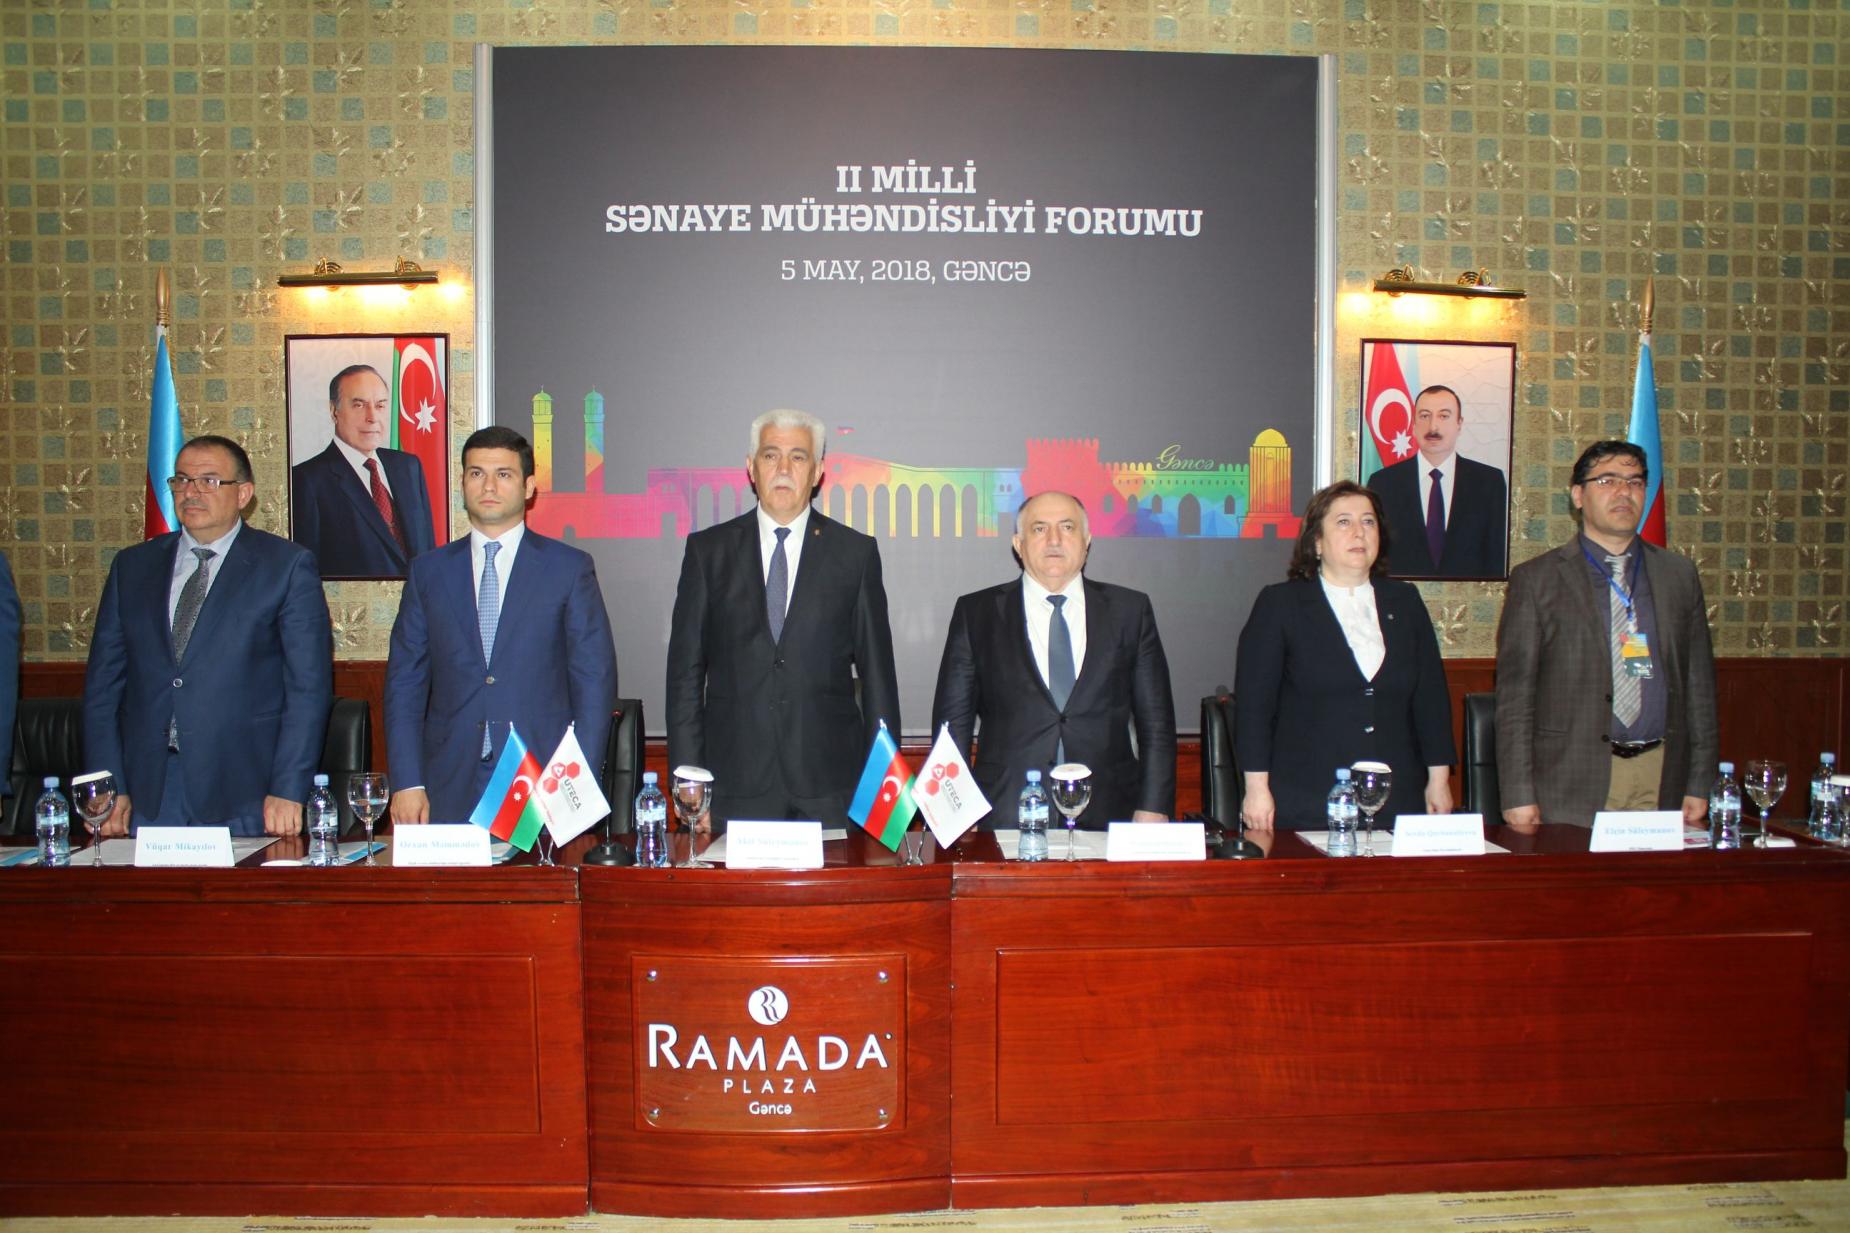 “Şəmkir Aqropark”ın əməkdaşları II Milli Sənaye Mühəndisliyi Forumunda